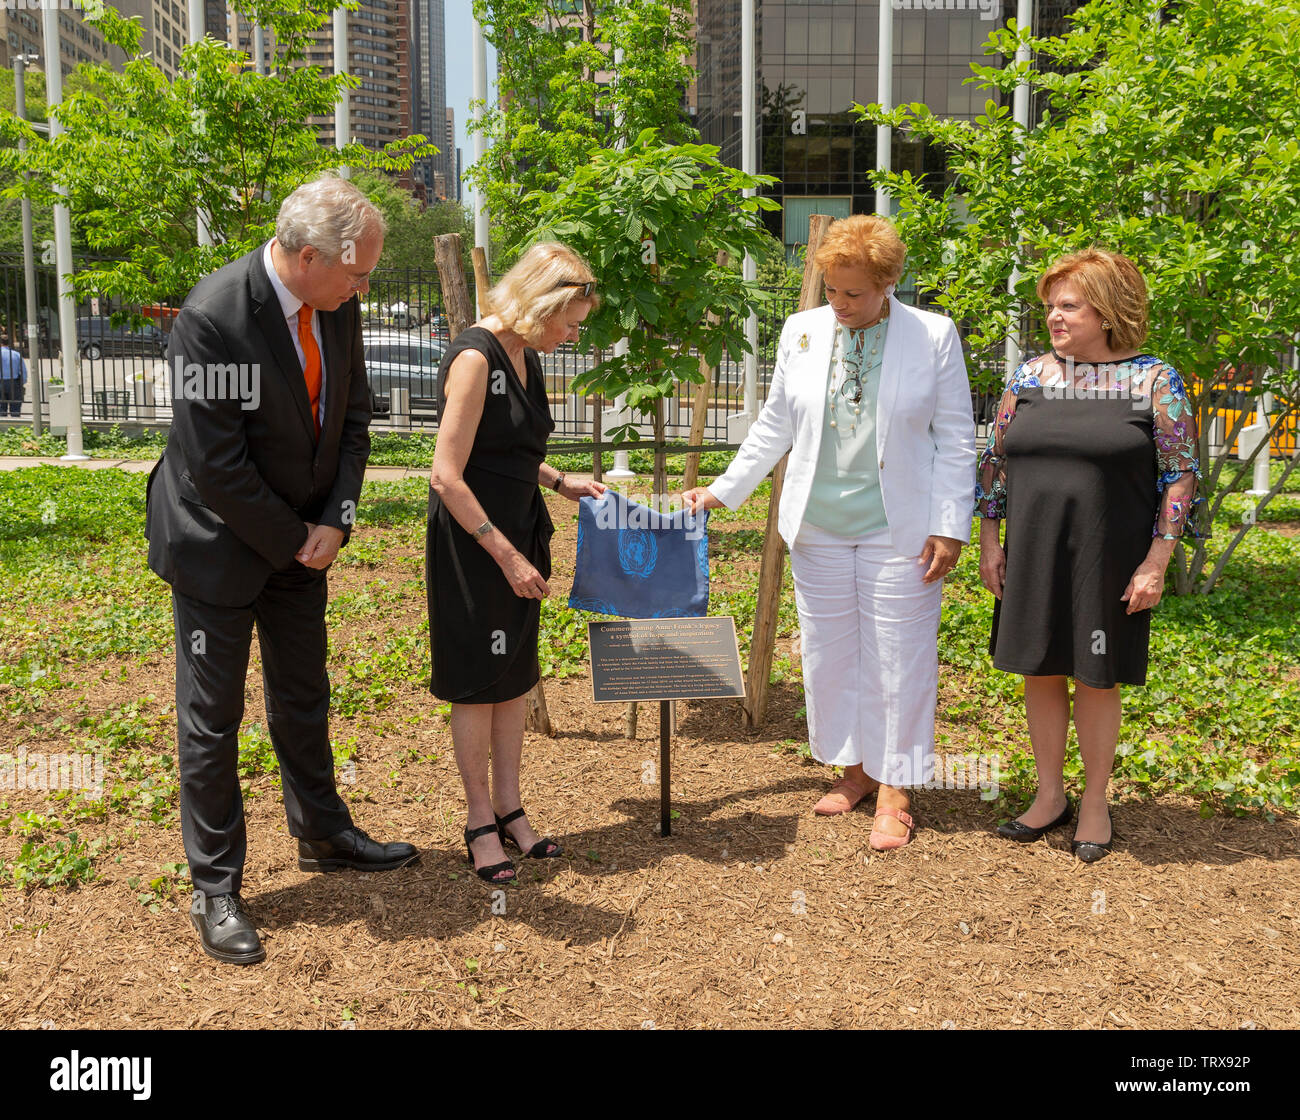 New York, NY - 12 juin 2019 : Cérémonie d'un jeune arbre pour commémorer l'héritage de Anne Frank et les six millions de tués pendant l'Holocauste au Siège de l'ONU Banque D'Images